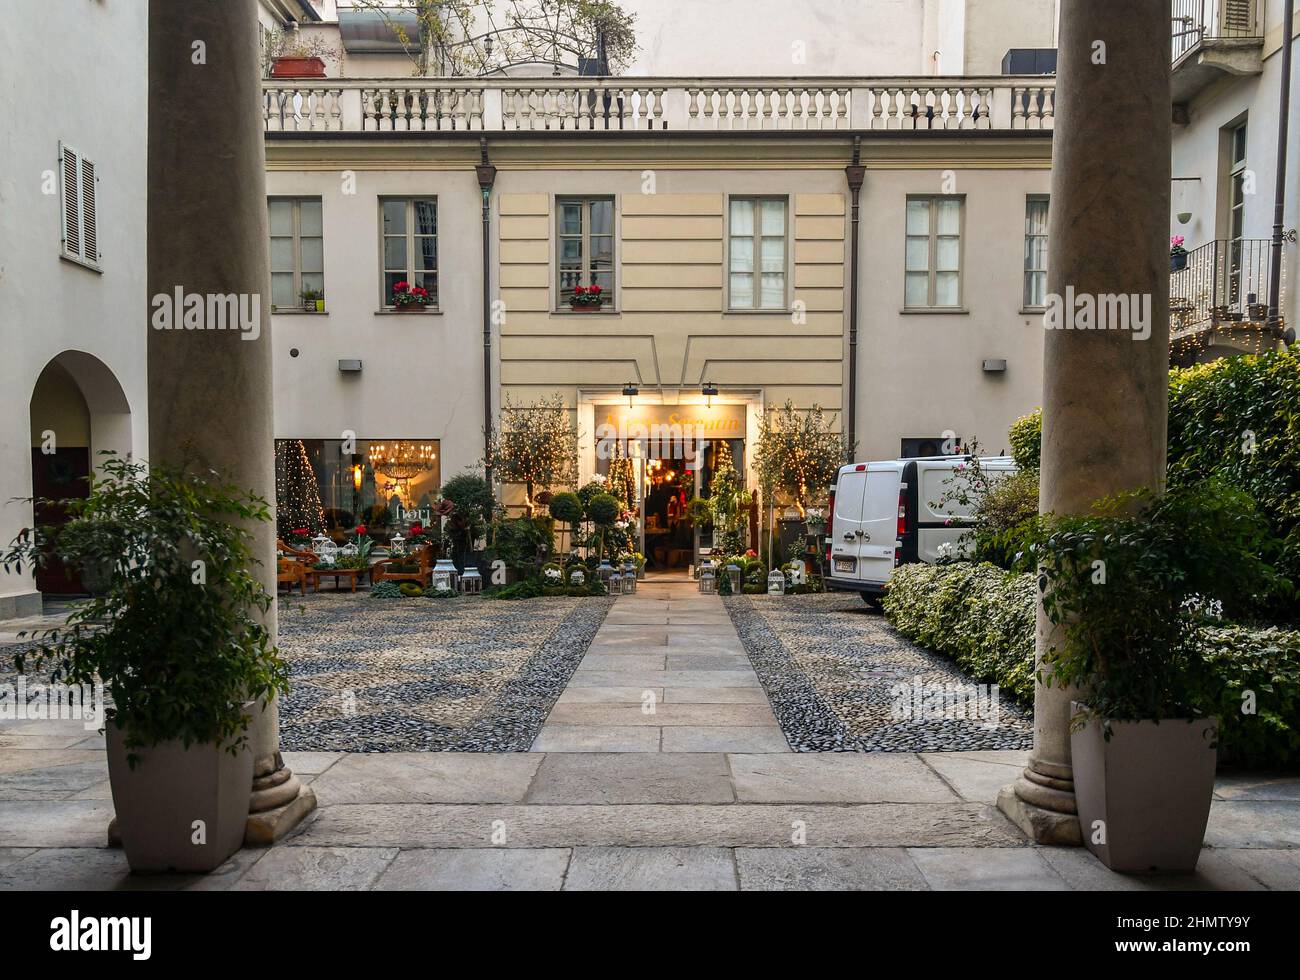 Un negozio di fiori con molte piante in vaso esposto sul fronte nel cortile  di un antico palazzo nel centro storico di Torino, Piemonte, Italia Foto  stock - Alamy